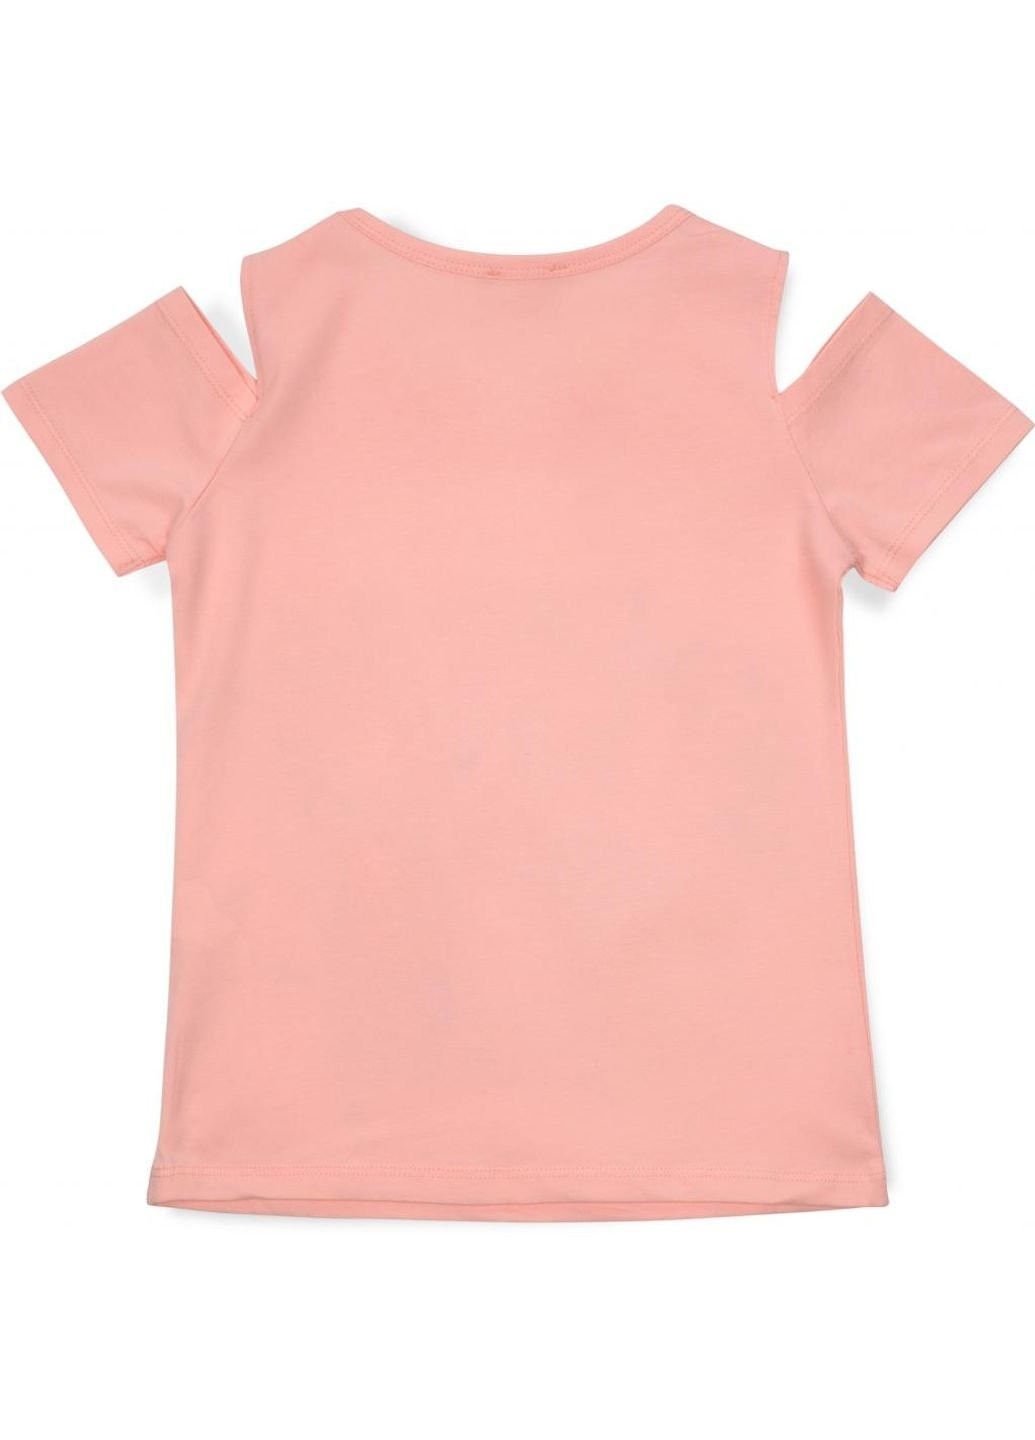 Персиковая демисезонная футболка детская с девочкой (14124-128g-peach) Breeze